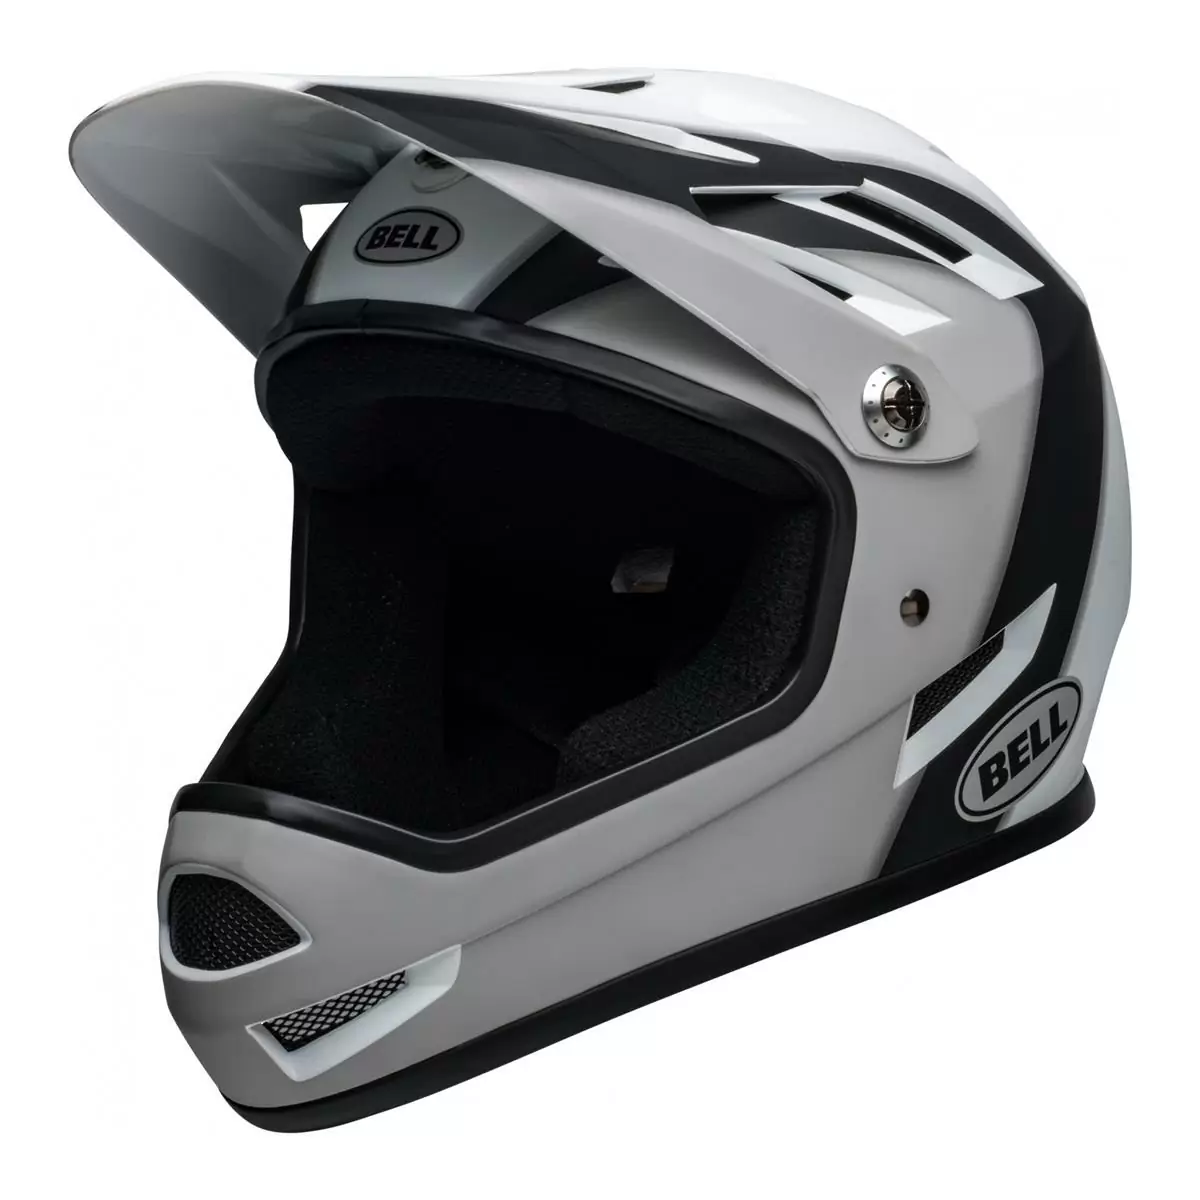 Sanction Full Face Helmet Black/White Size S (52-54cm) - image